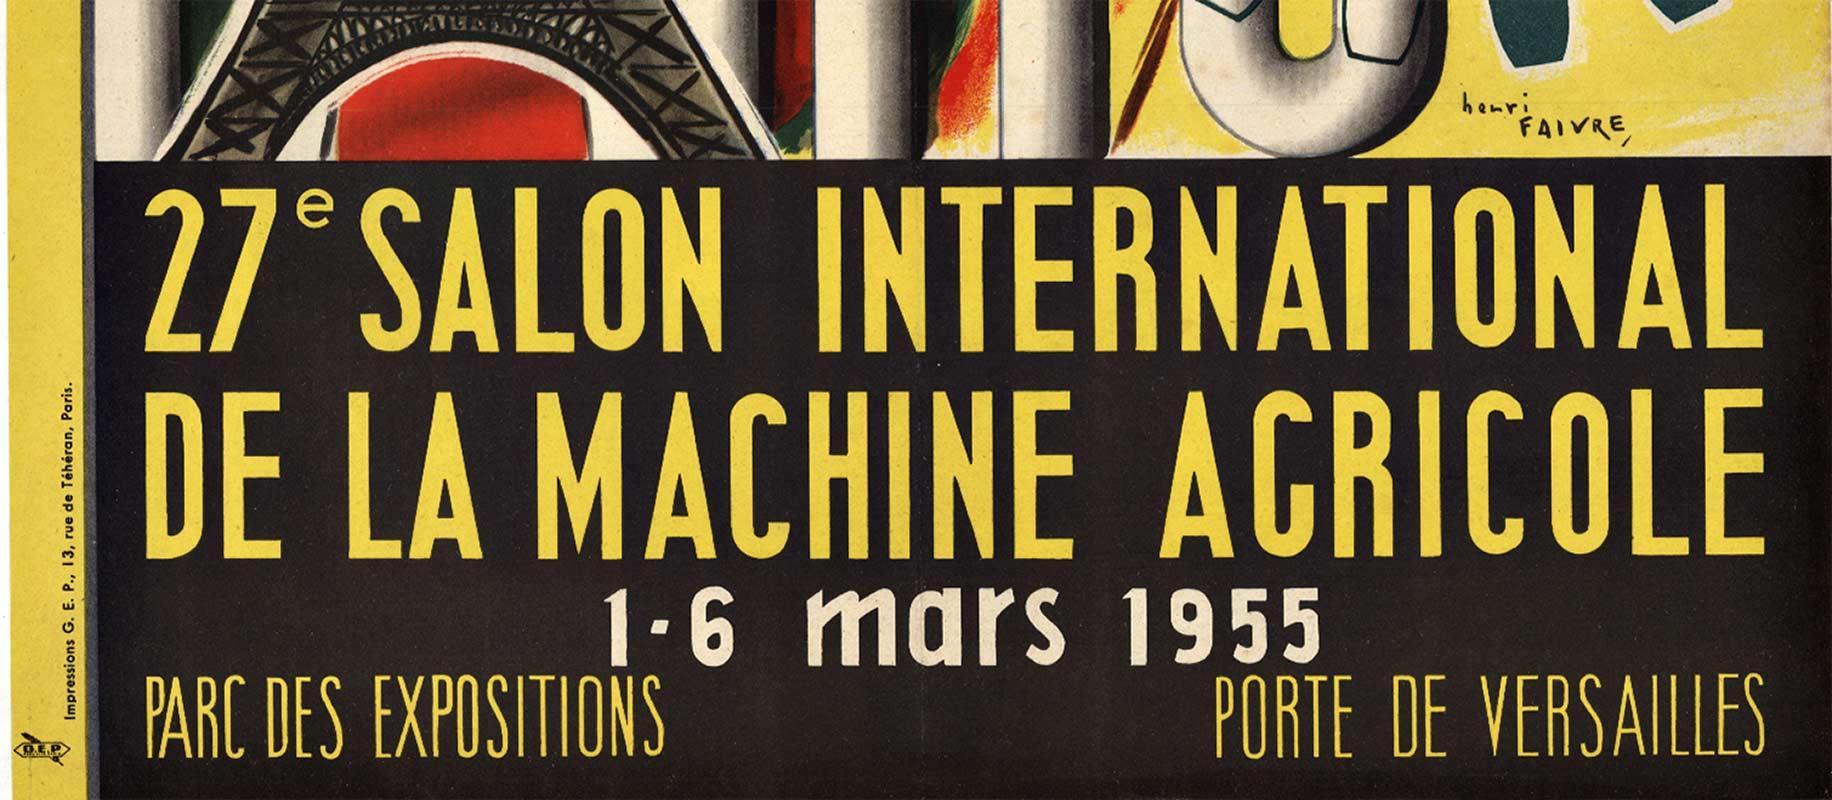 Paris 27th Salon International original vintage poster  - Print by Henri Faivre